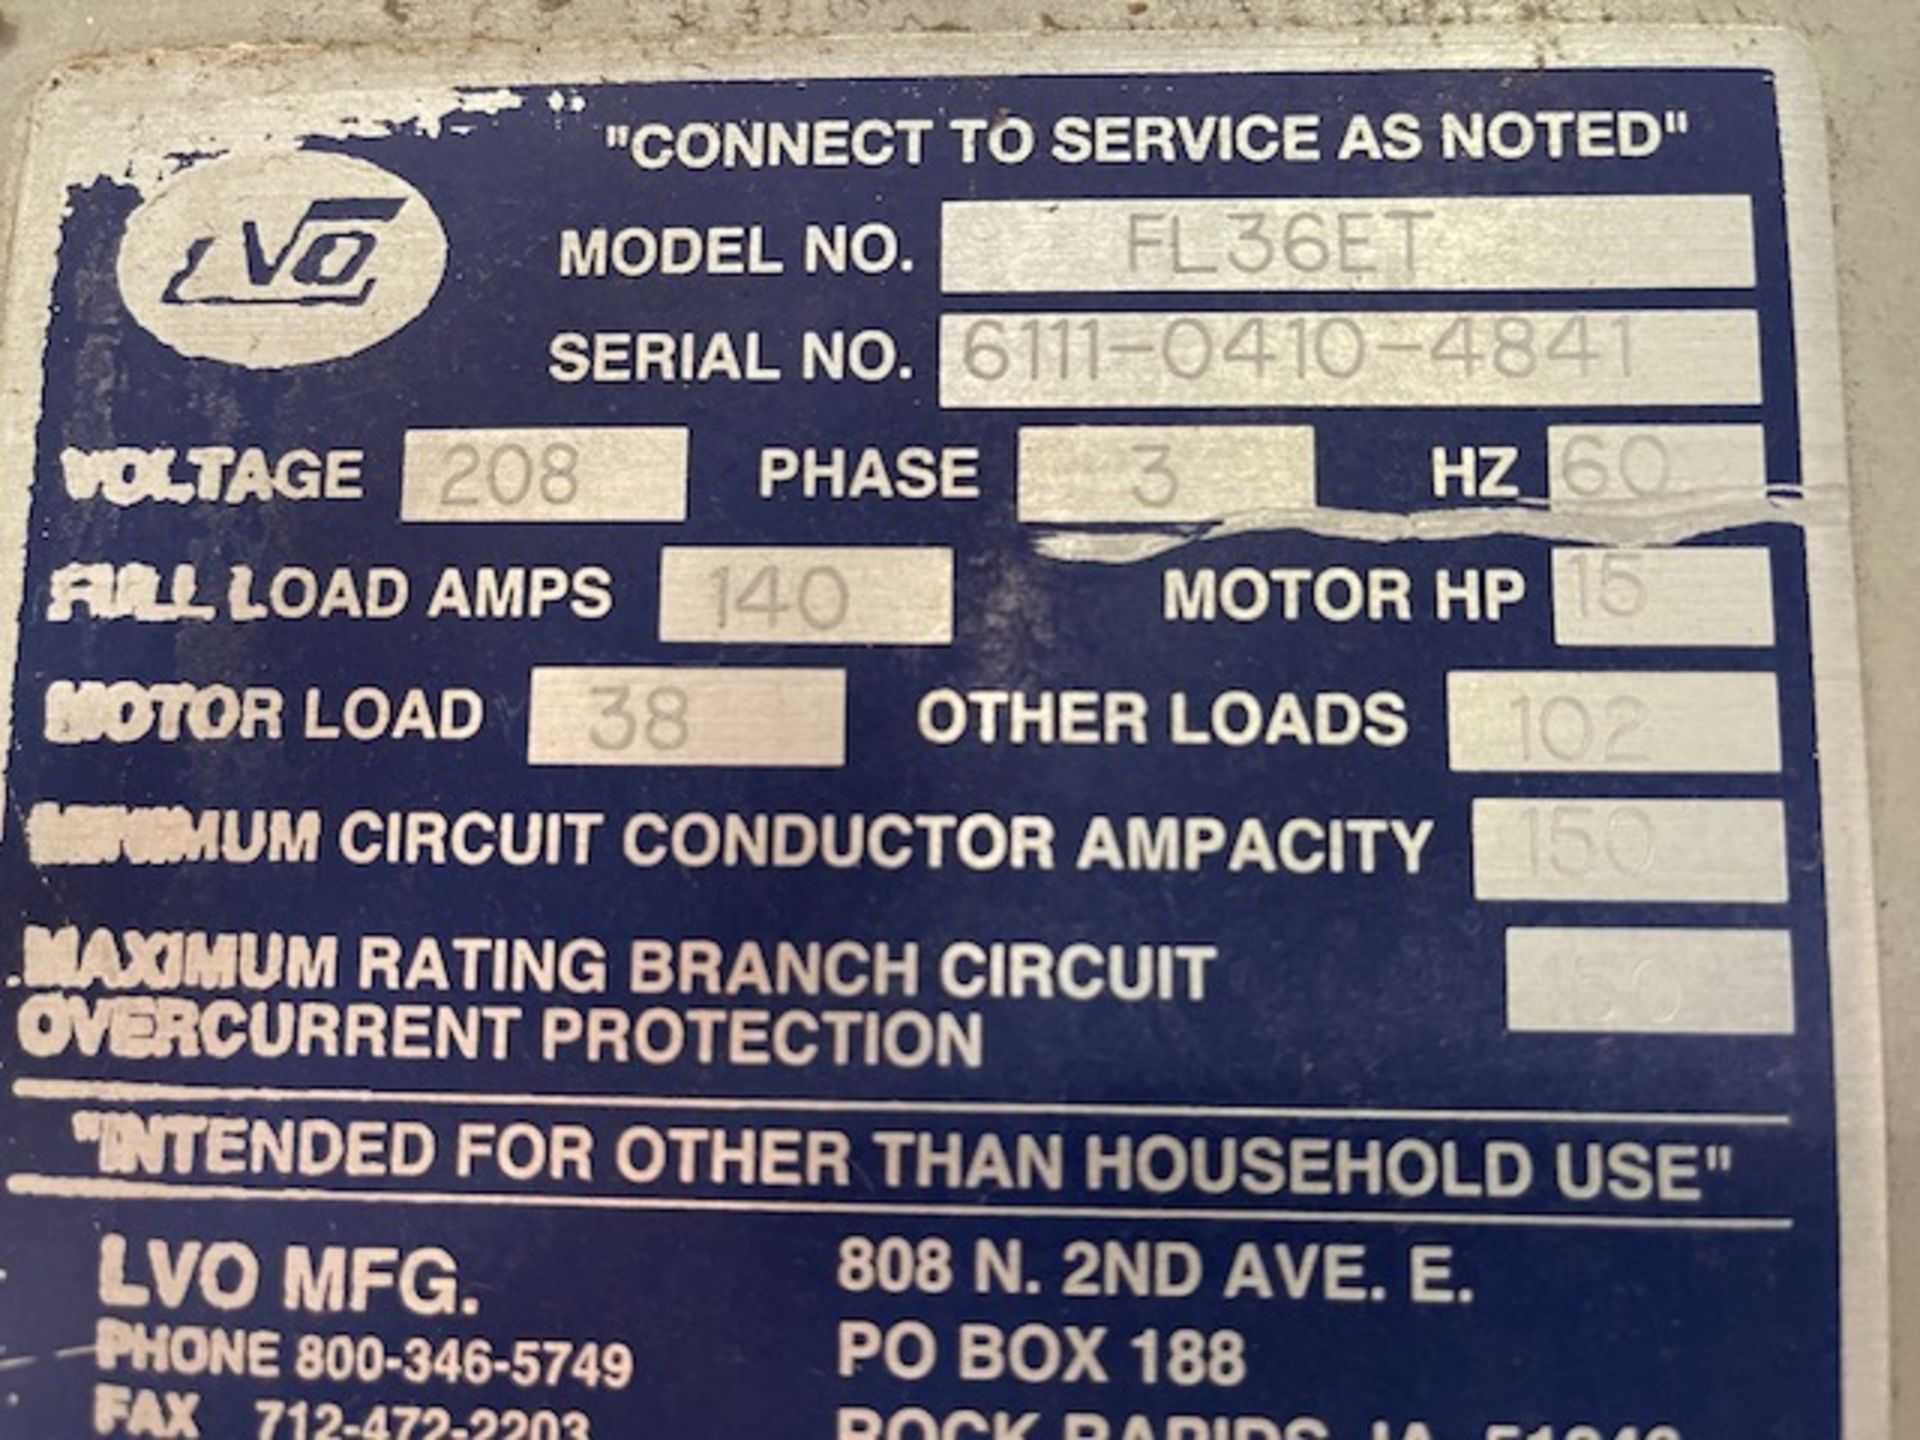 LVO Washer, 220 Volt, Model FL36ET, Serial #6111-0410-4841 Rigging/Loading Fee $50 - Image 2 of 3